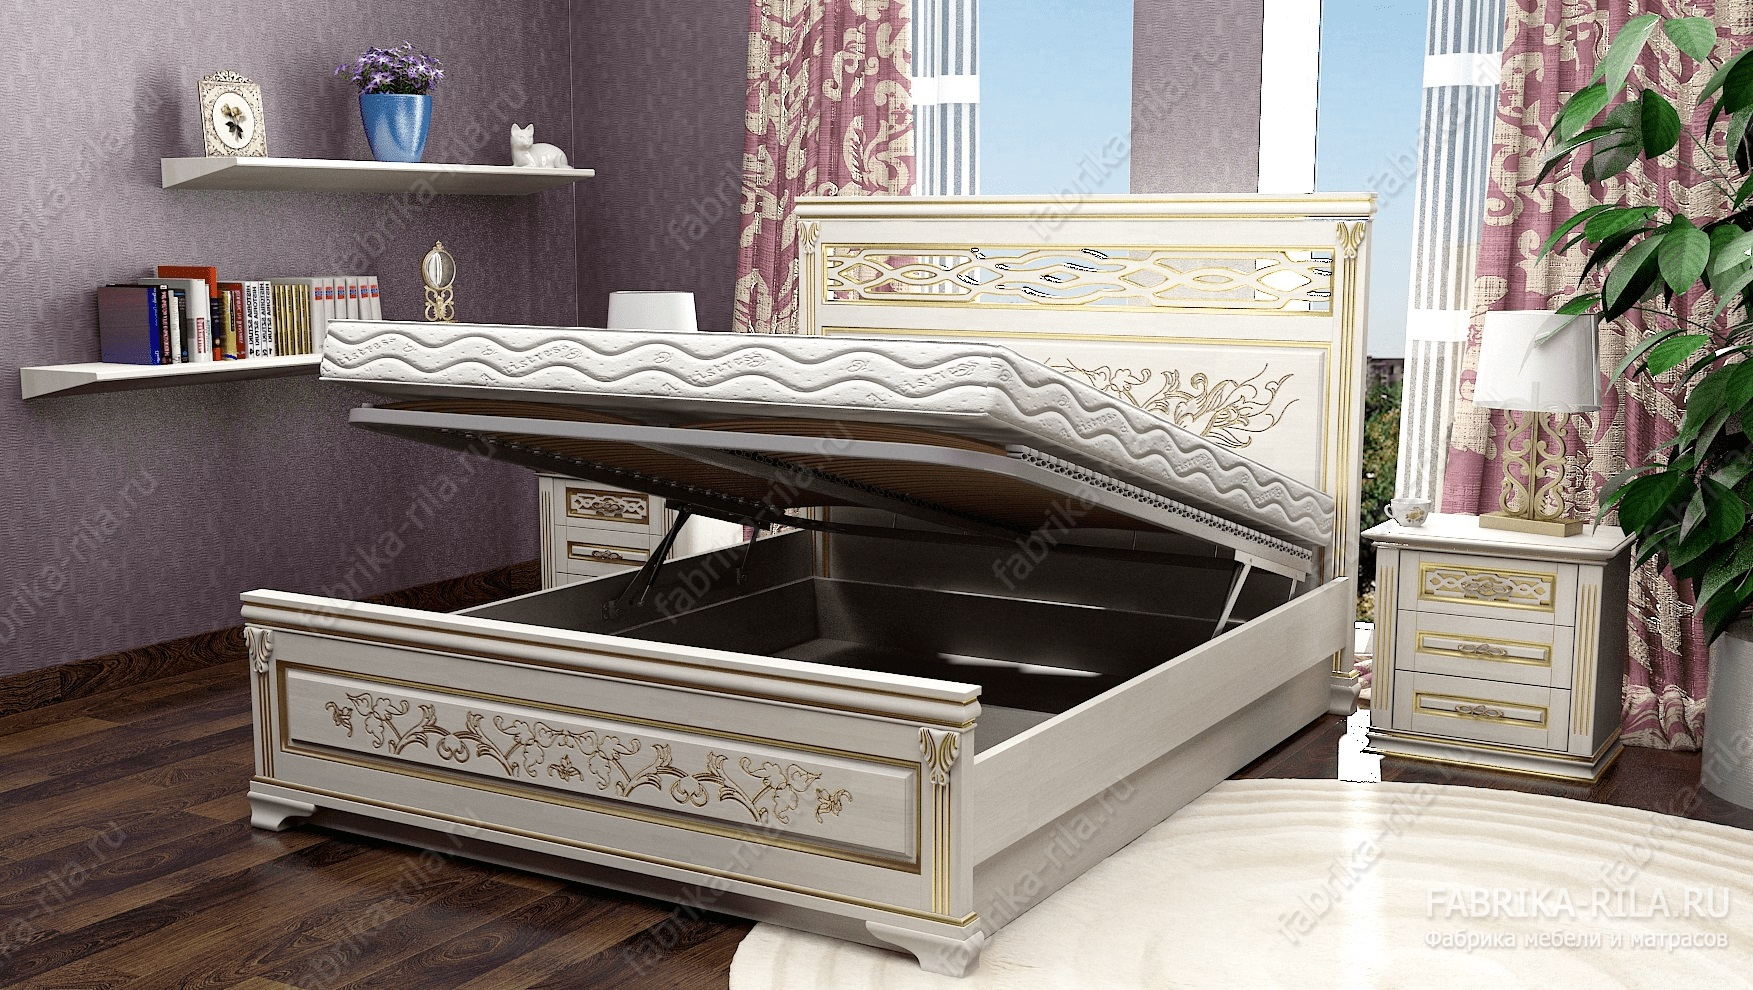 Кровать Lirоna 3 — 90x190 см. из ясеня